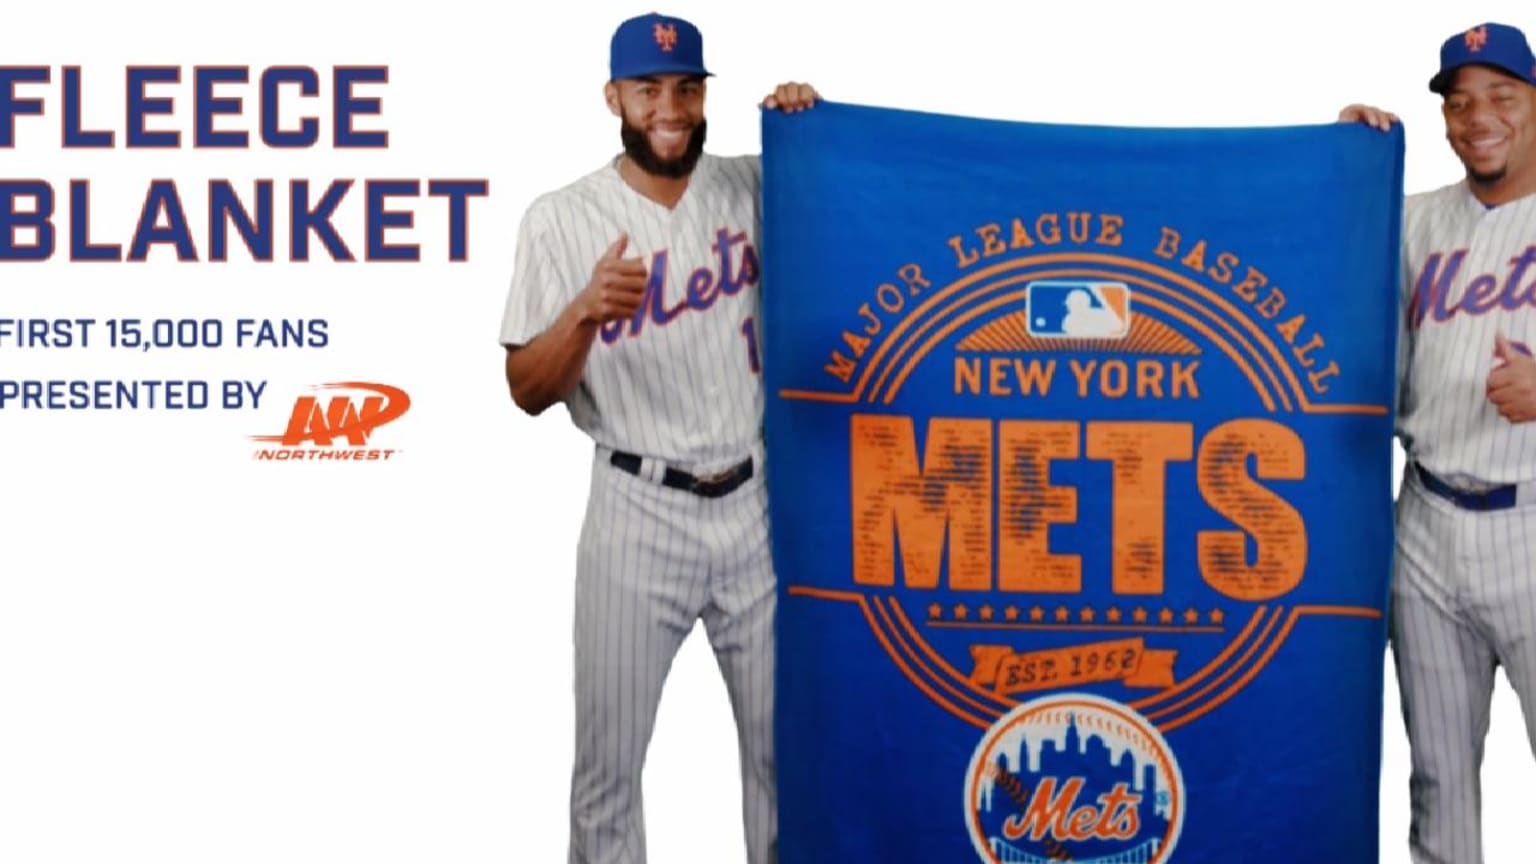 Mets Fleece Blanket giveaway, 08/18/2017